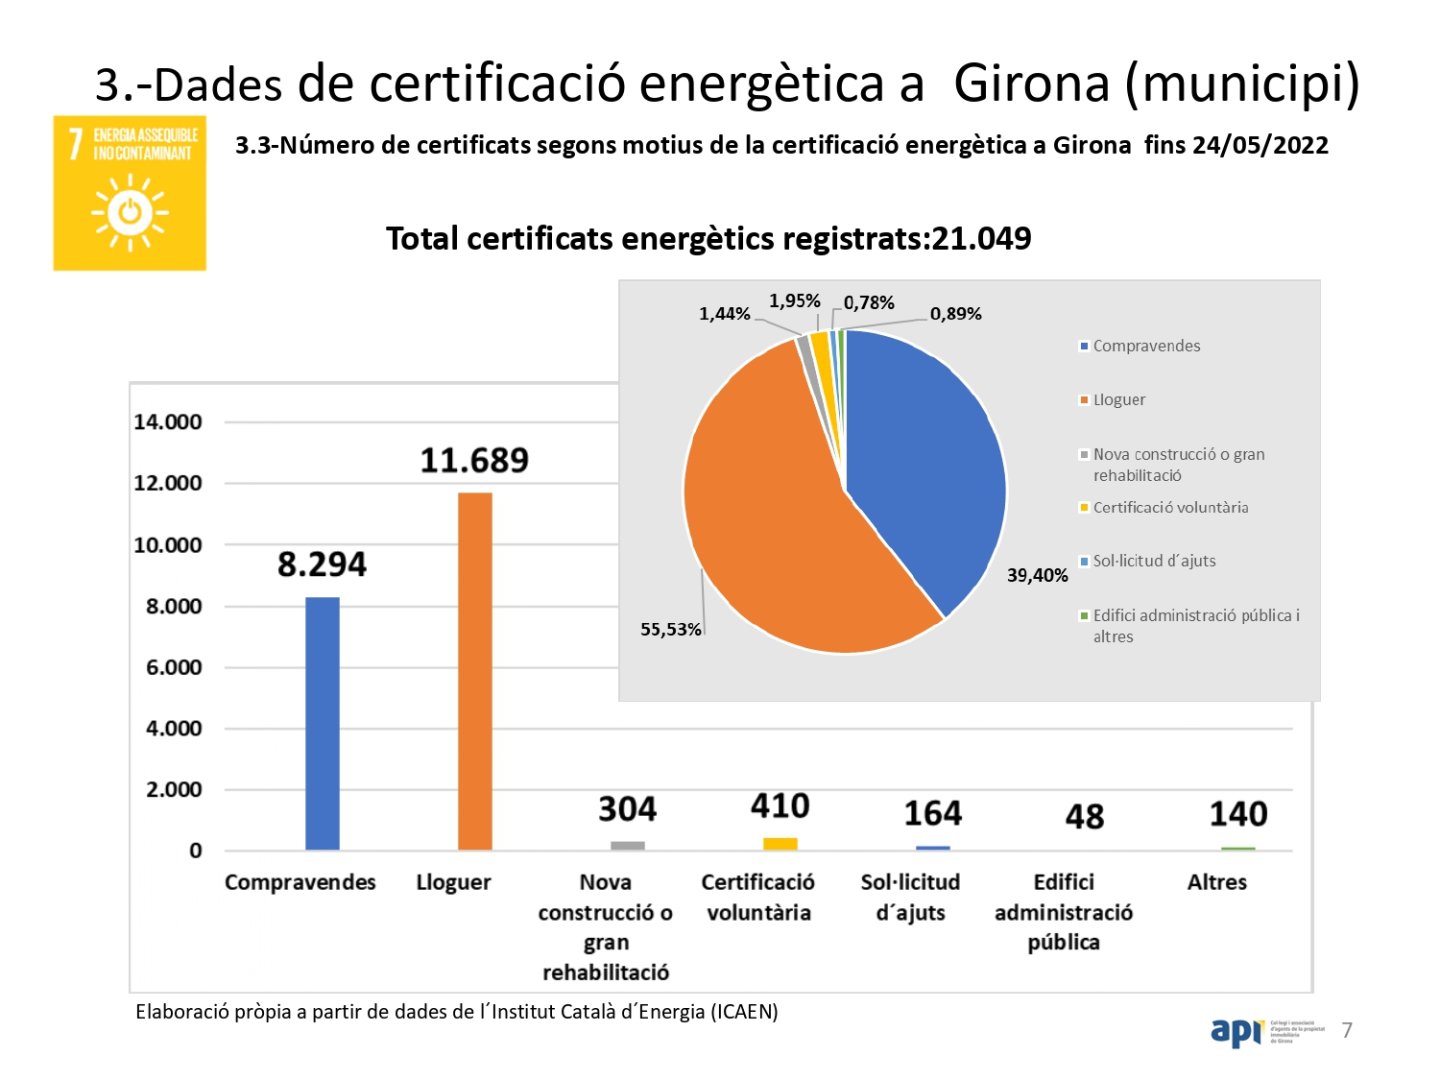 Total certificats energètics registrats. Dades a Girona fins 24/5/2022